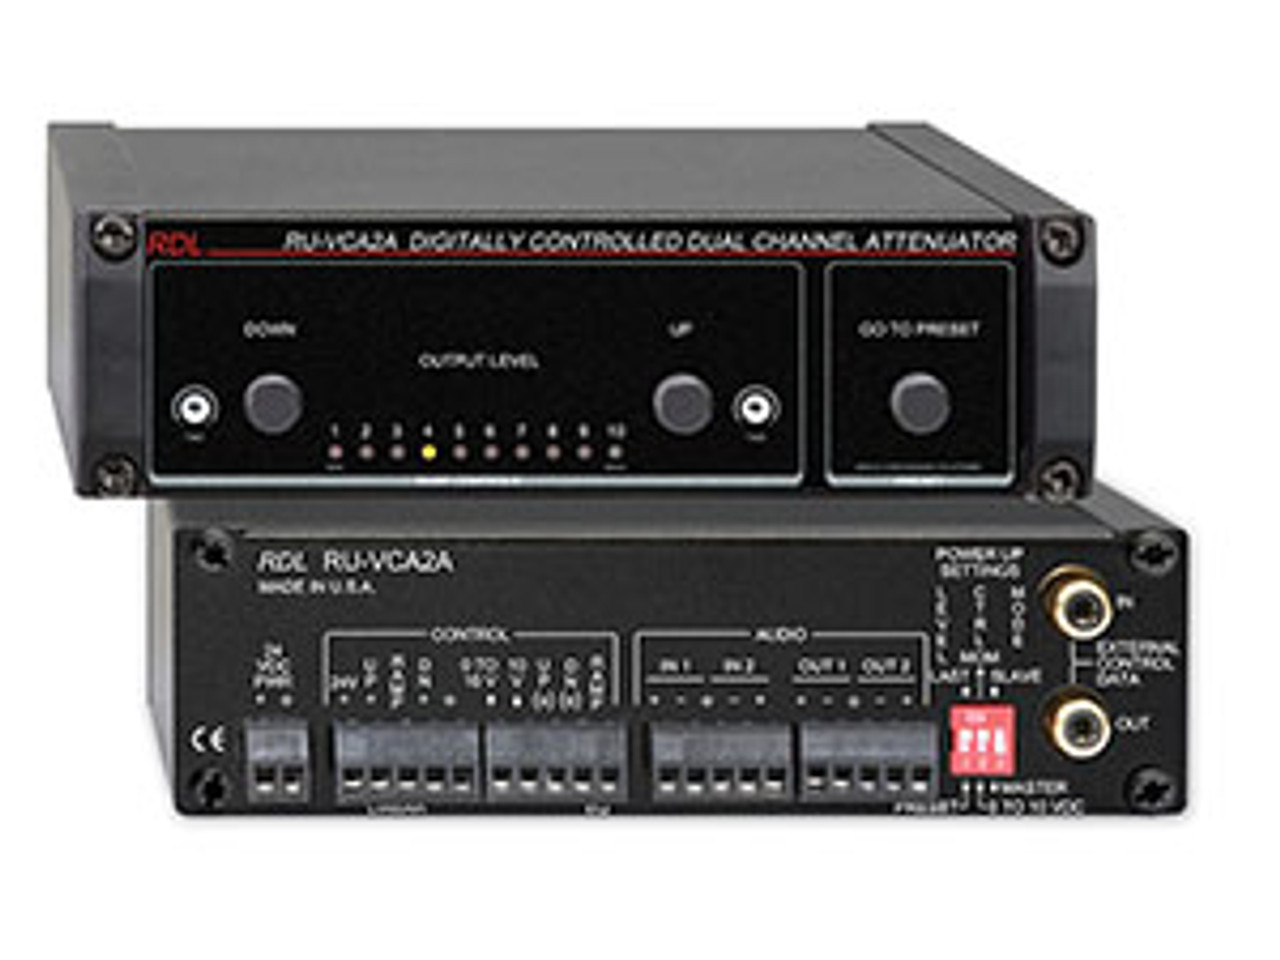 RDL RU-VCA2A Digitally Controlled Attenuators (RU-VCA2A)